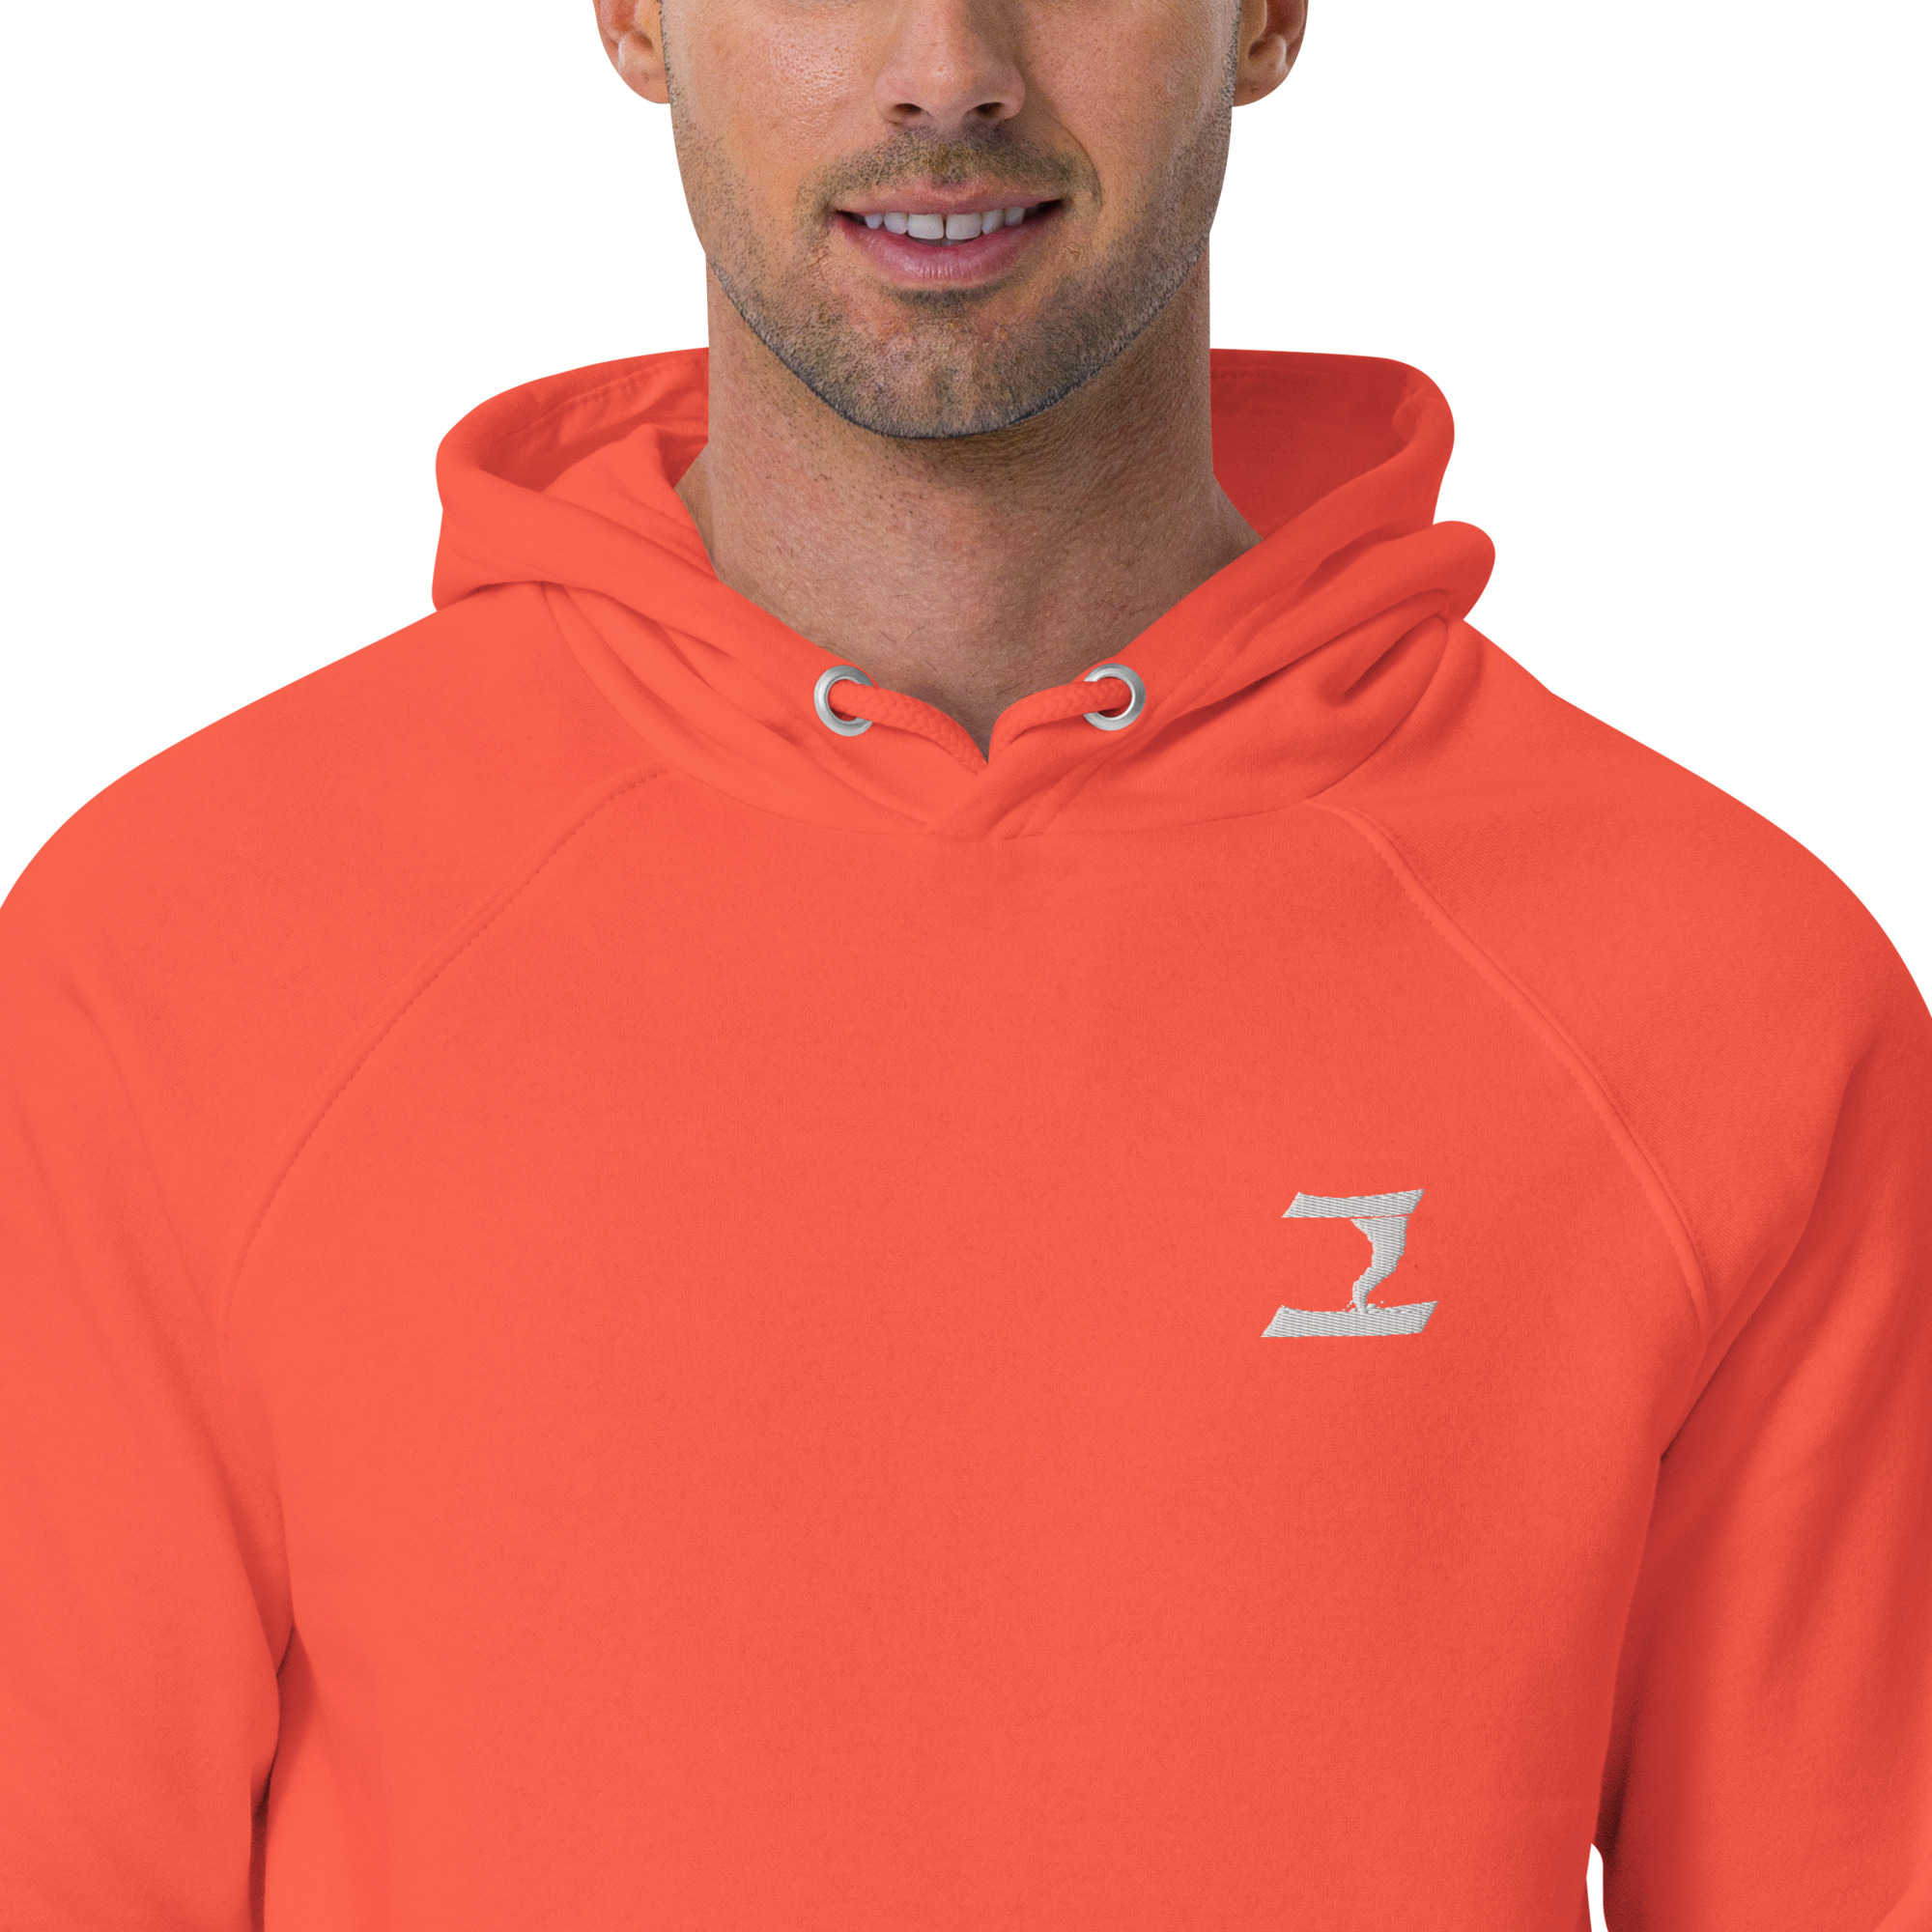 unisex-eco-raglan-hoodie-burnt-orange-zoomed-in-631695eb087f5.jpg